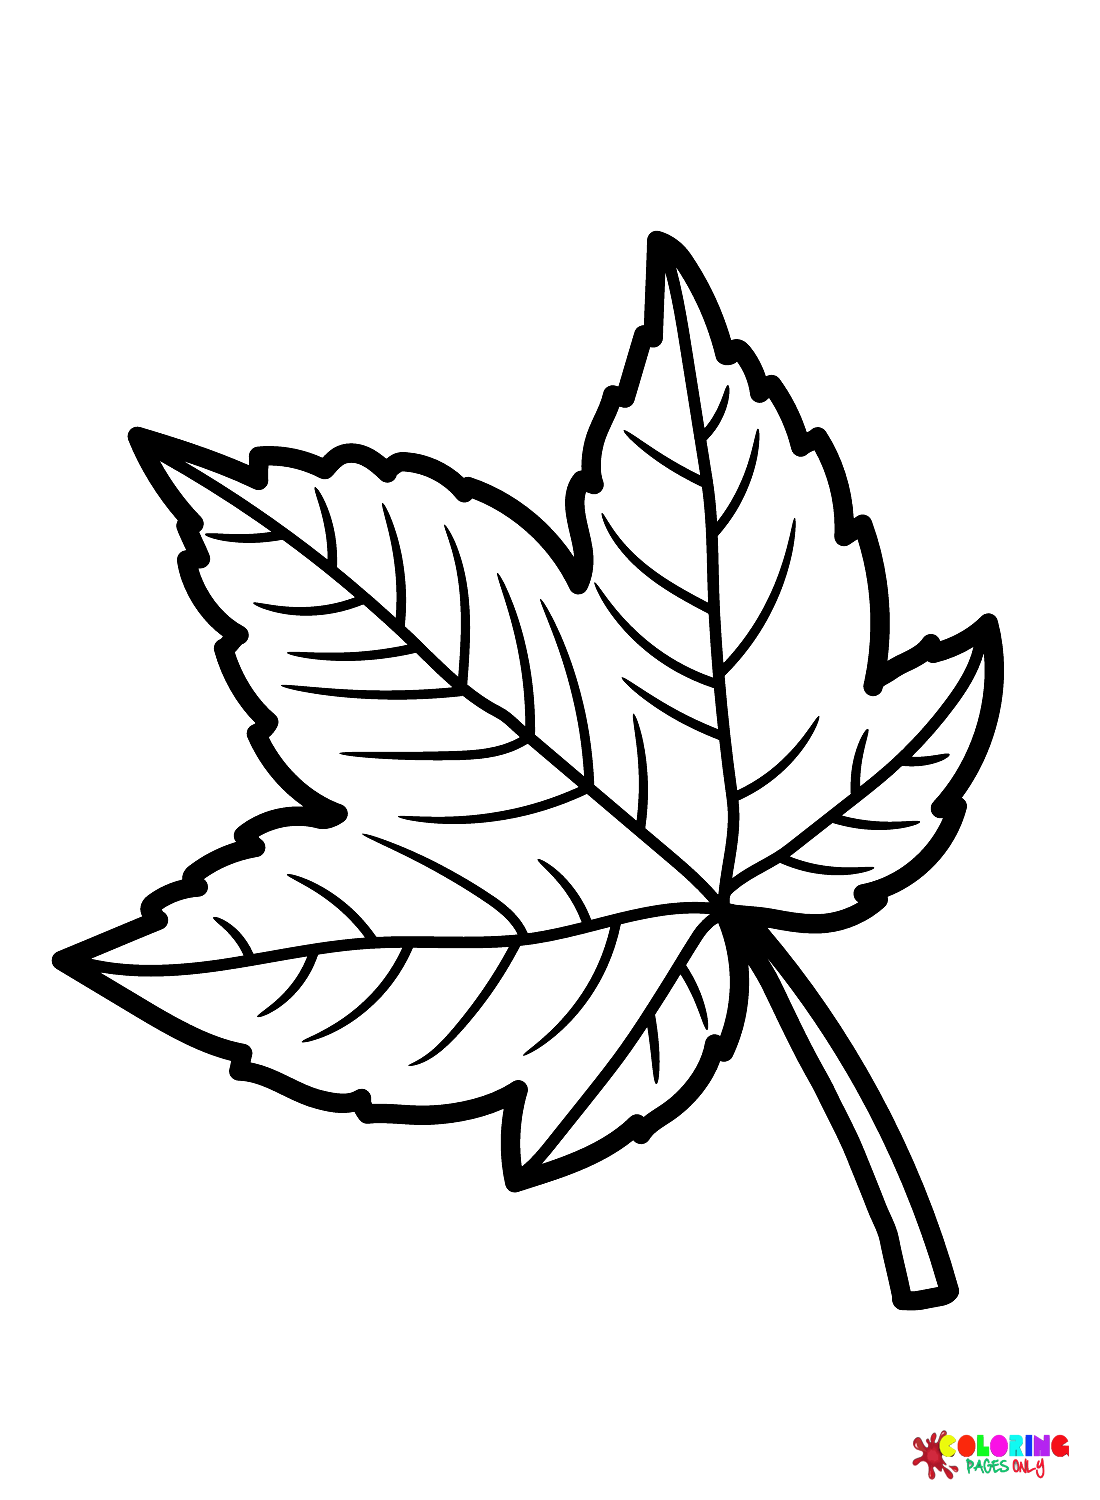 Foglia di platano dalle foglie